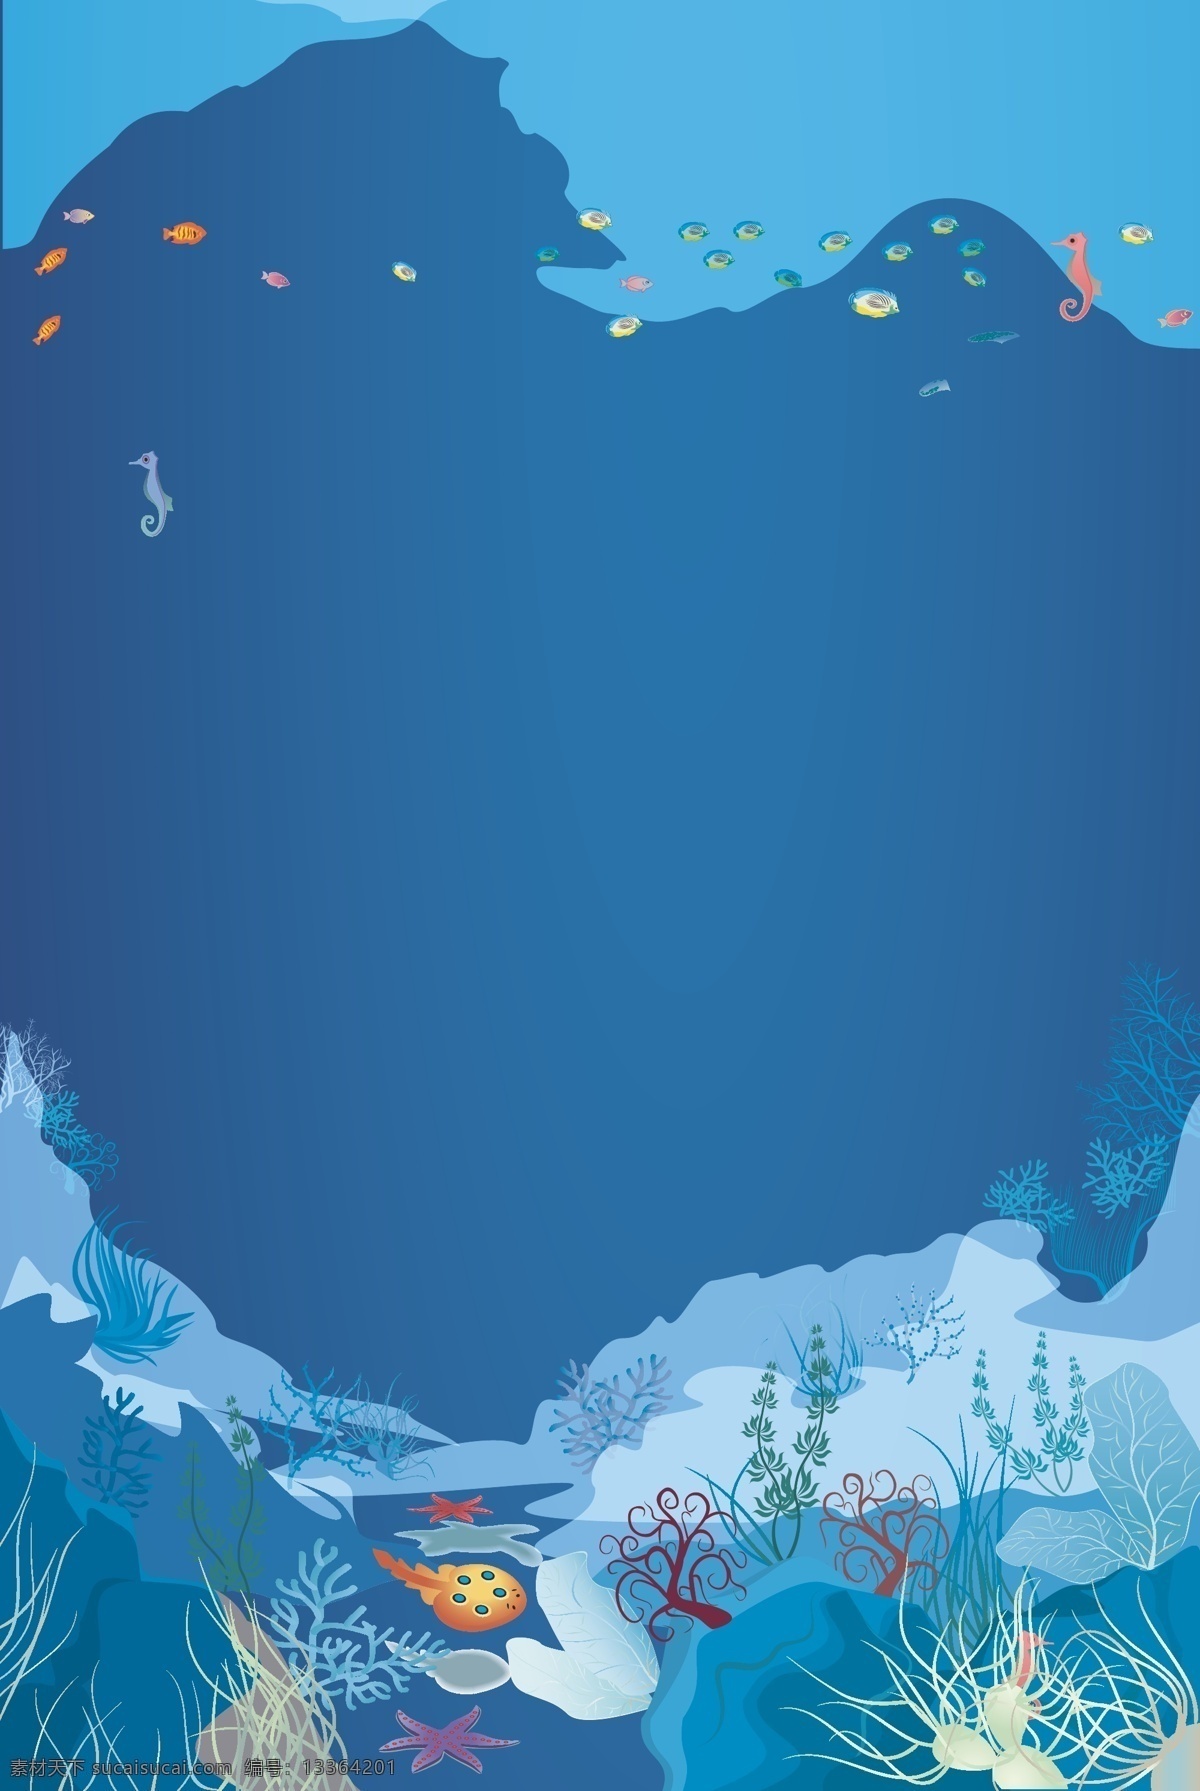 矢量 卡通 海洋 海底 世界 背景 度假 海底世界 海星 海洋背景 海洋生物 卡通背景 蓝色 蓝色背景 旅游 鱼